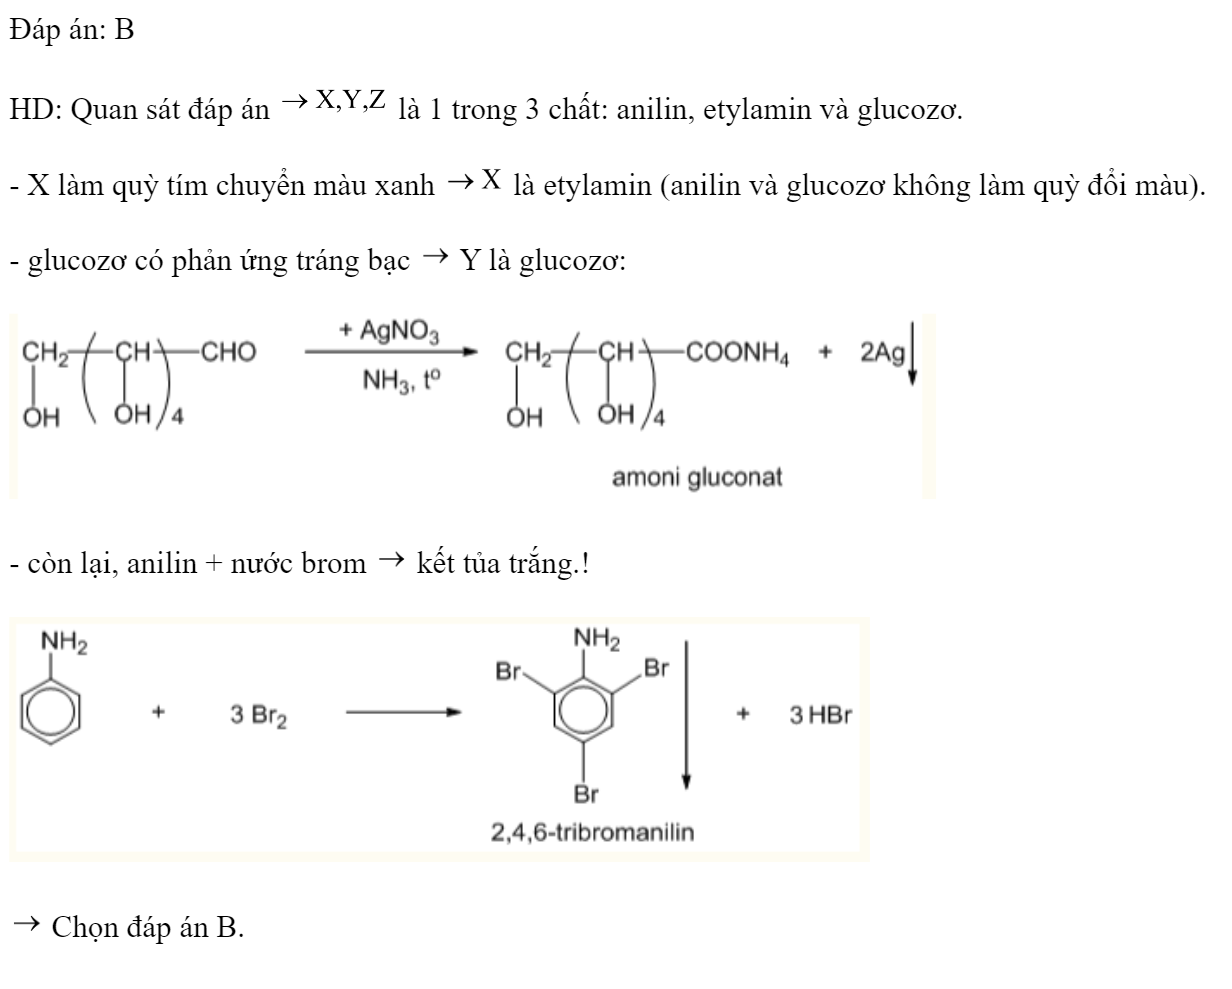 Kết quả thí nghiệm của các chất X, Y, Z với các thuốc thử được ghi ở bảng sau:  Các chất X, Y, Z lần lượt là: 	A. Anilin, glucozo, etylamin.	B. Etylamin, glucozơ, anilin. 	C. Etylamin, anilin, glucozơ.	D. Glucozo, etylamin, anilin. Đáp án: B HD: Quan sát đáp án  là 1 trong 3 chất: anilin, etylamin và glucozơ. - X làm quỳ tím chuyển màu xanh  là etylamin (anilin và glucozơ không làm quỳ đổi màu). - glucozơ có phản ứng tráng bạc  Y là glucozơ:  - còn lại, anilin + nước brom  kết tủa trắng.!   Chọn đáp án B. (ảnh 2)